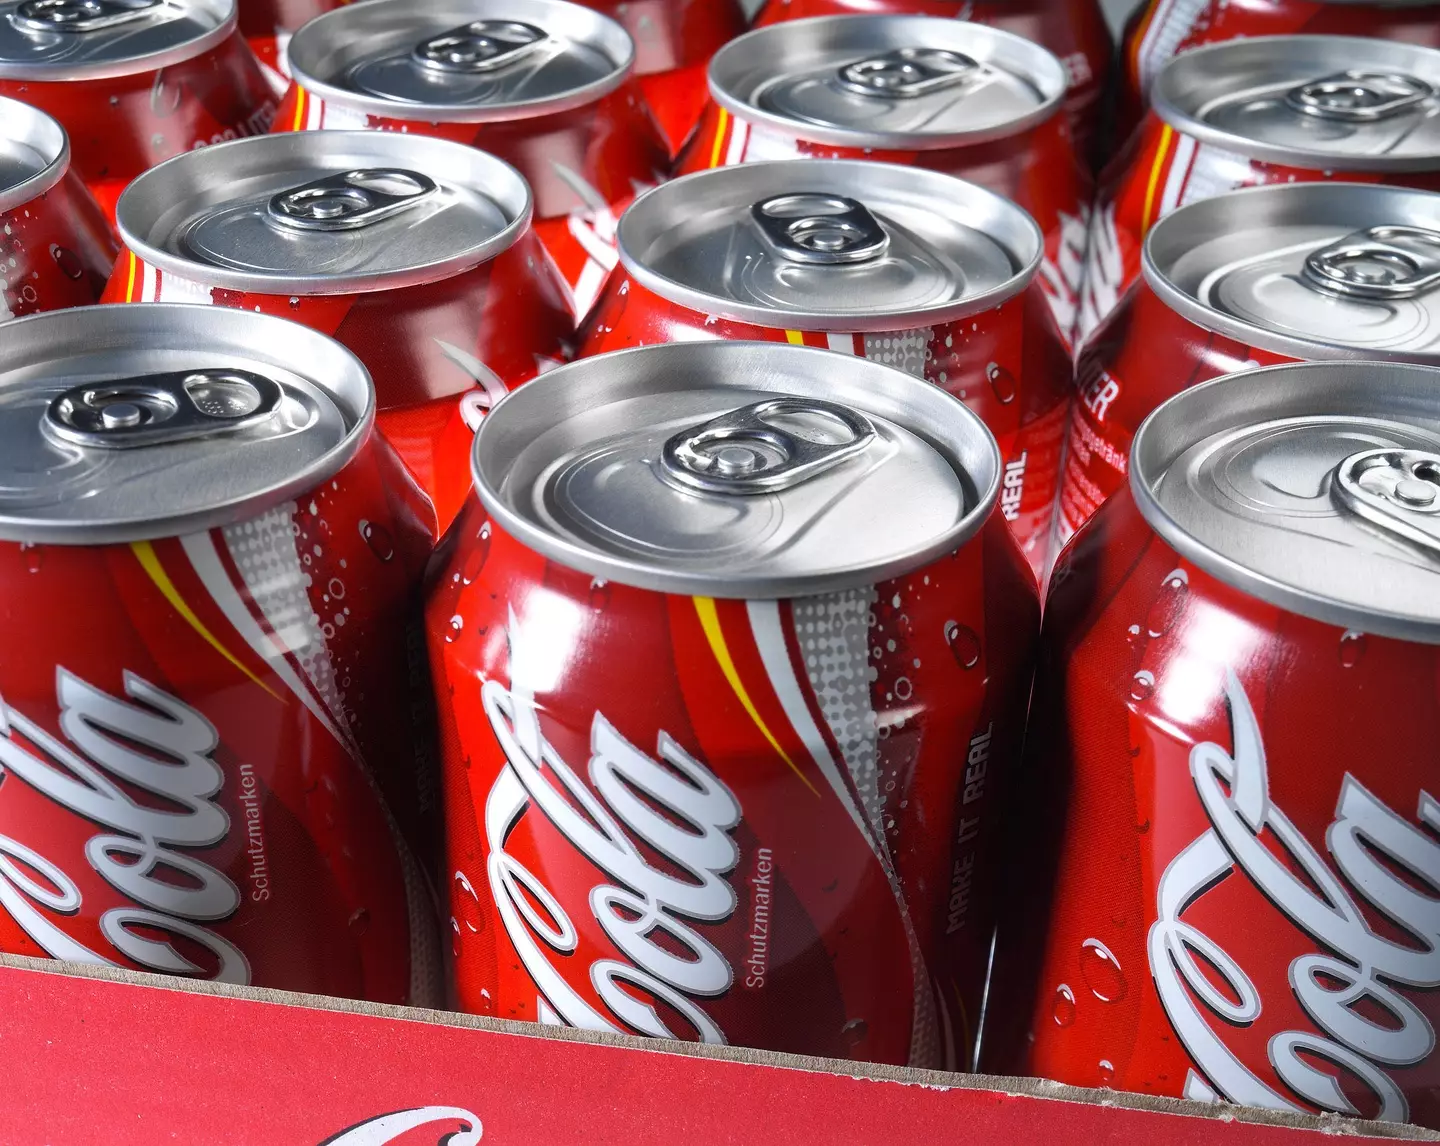 Buffett drinks five cans of Coke each day.